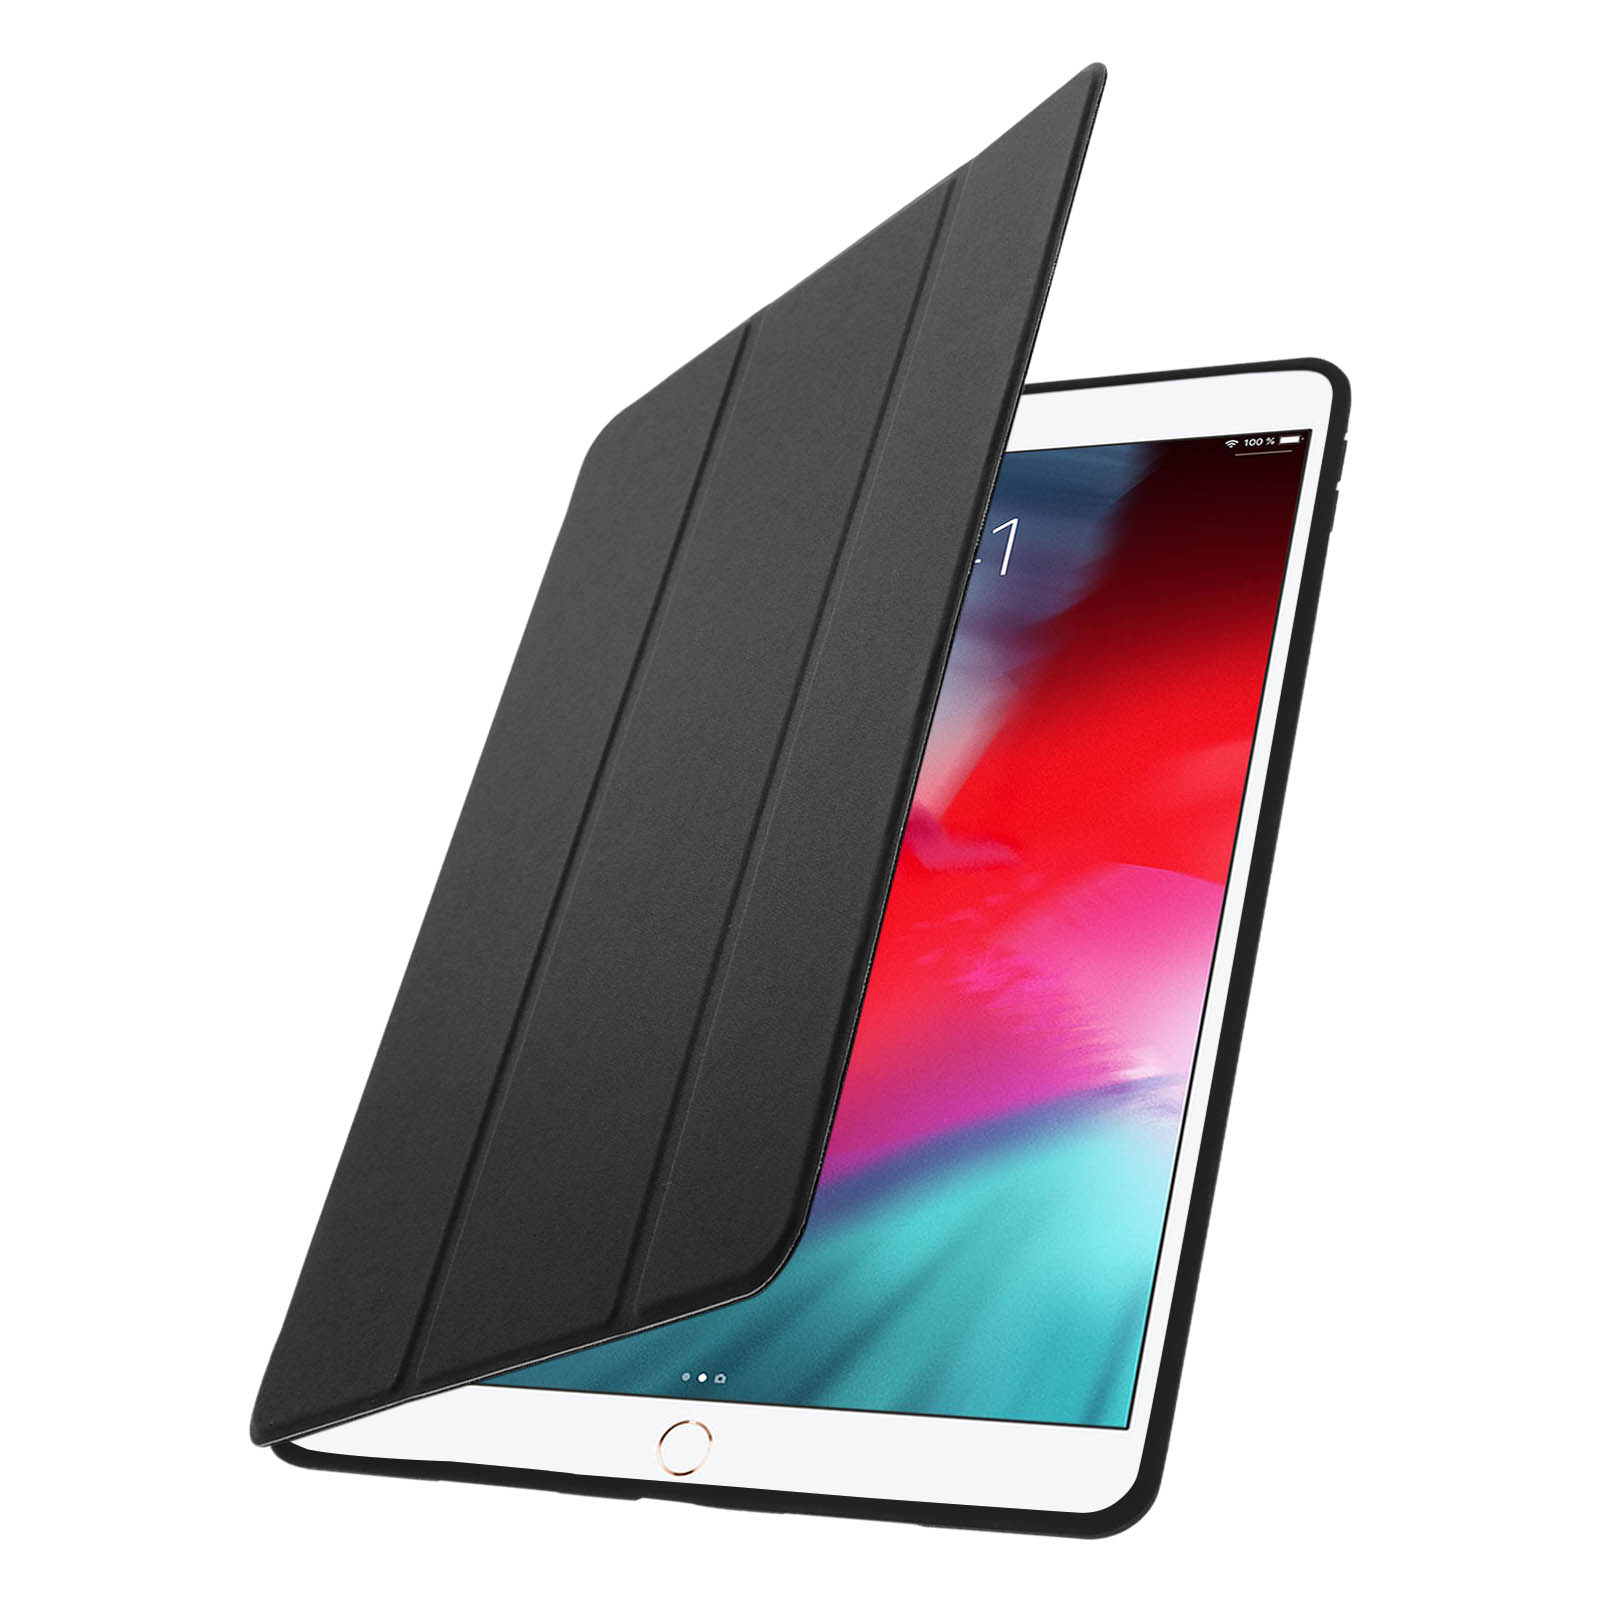 Acheter un étuis pour votre Apple iPad Pro 10.5 sur